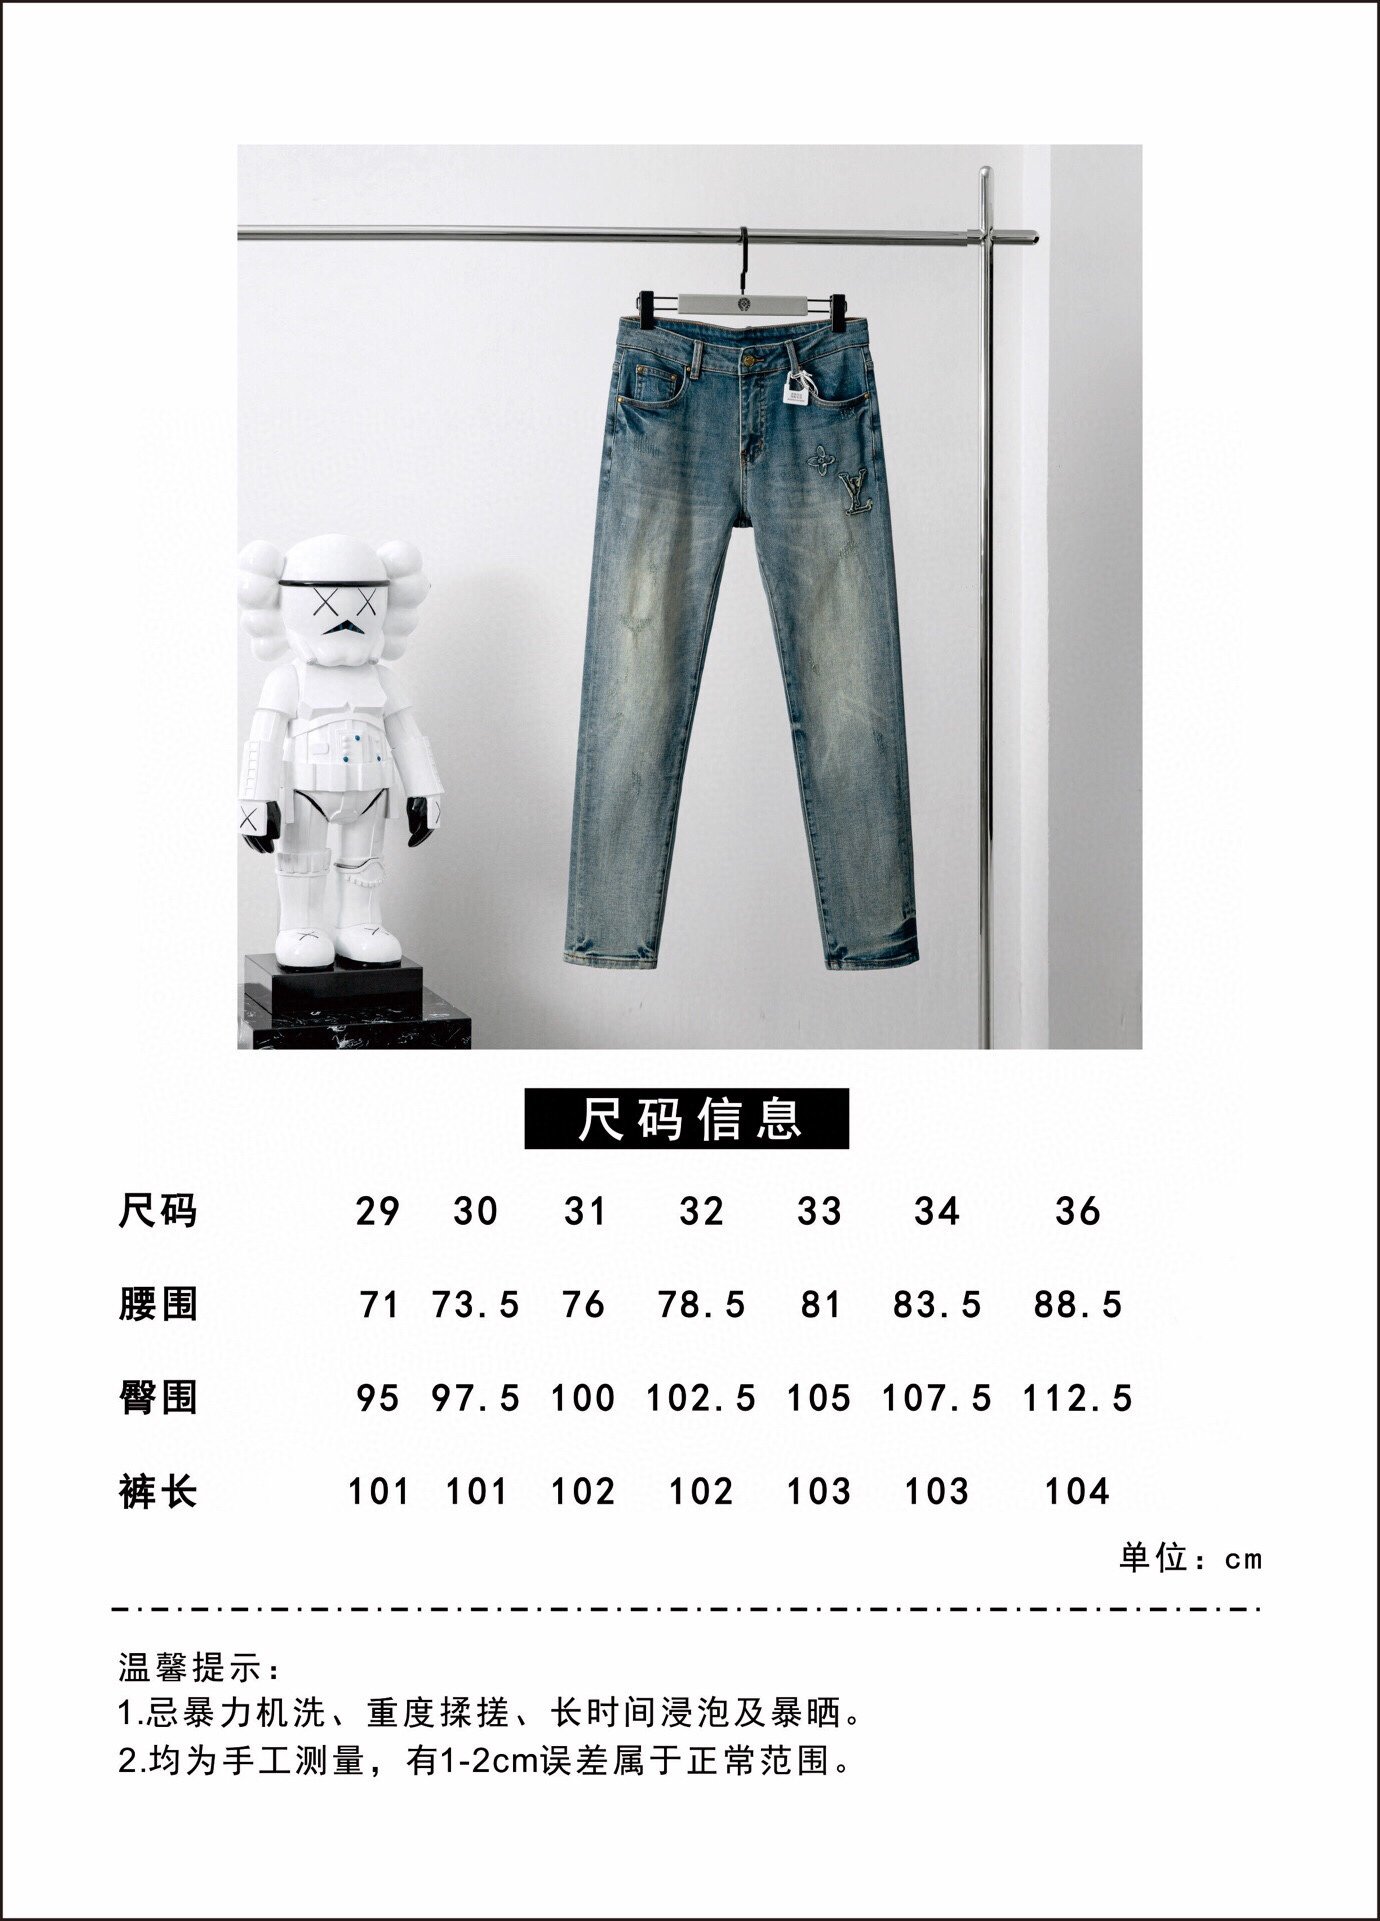 品牌L**V季度2024春夏颜色蓝色尺码29-36码版型修身直脚版牛仔裤重量11盎司弹力牛仔成分棉92%